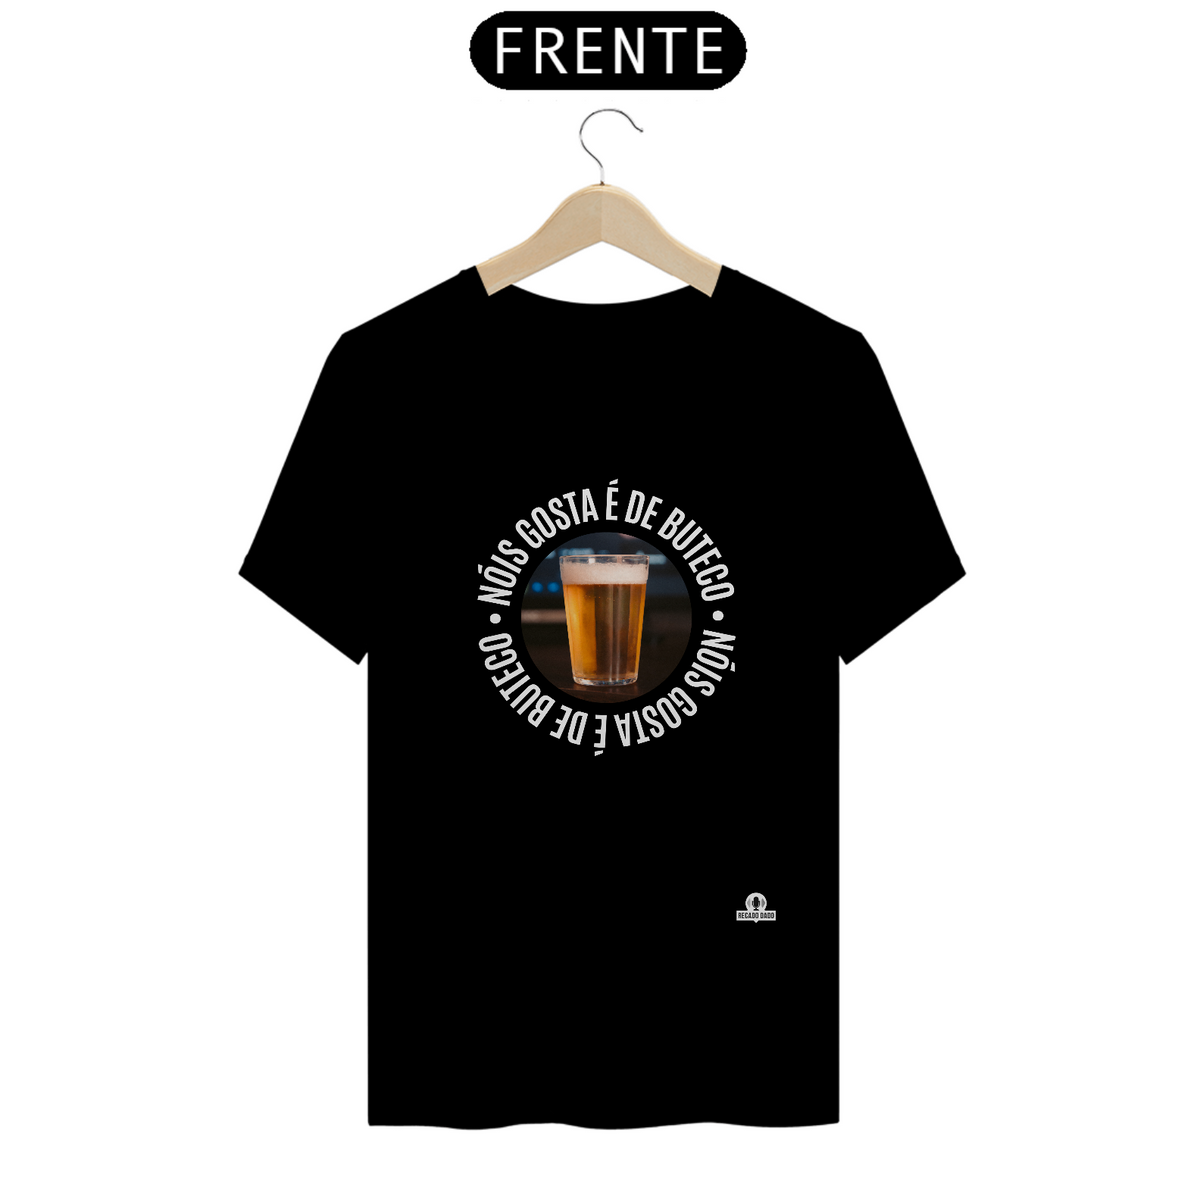 Nome do produto: Camiseta “Nóis Gosta É de Boteco” com imagem de um Copo americano de Cerveja.